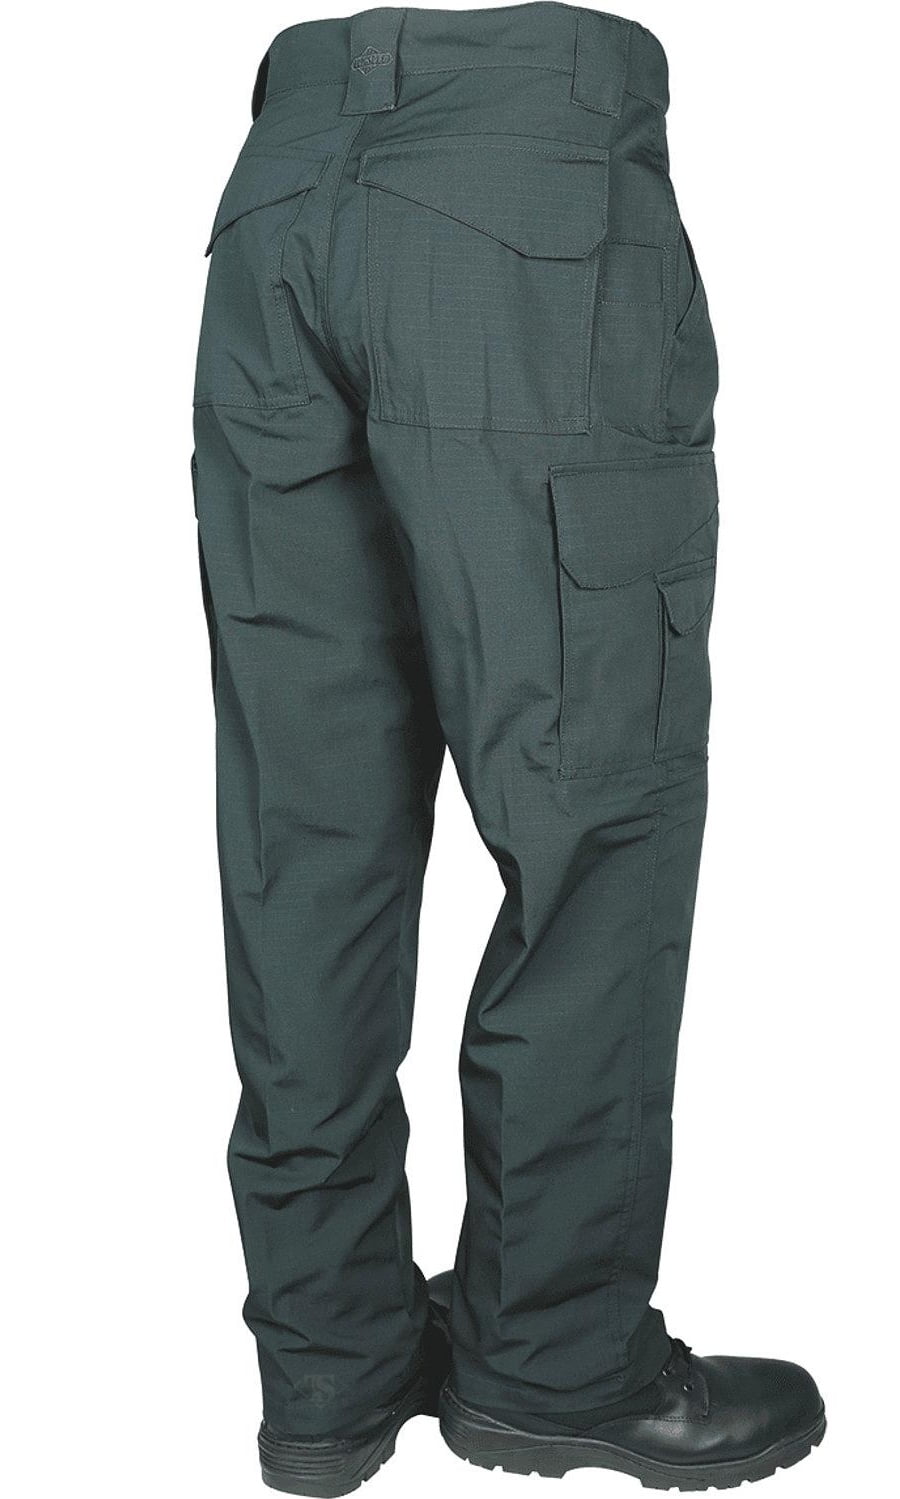 TRU-SPEC Men's 24-7 Series Original Tactical Pant, Spruce, 28W 32L ...